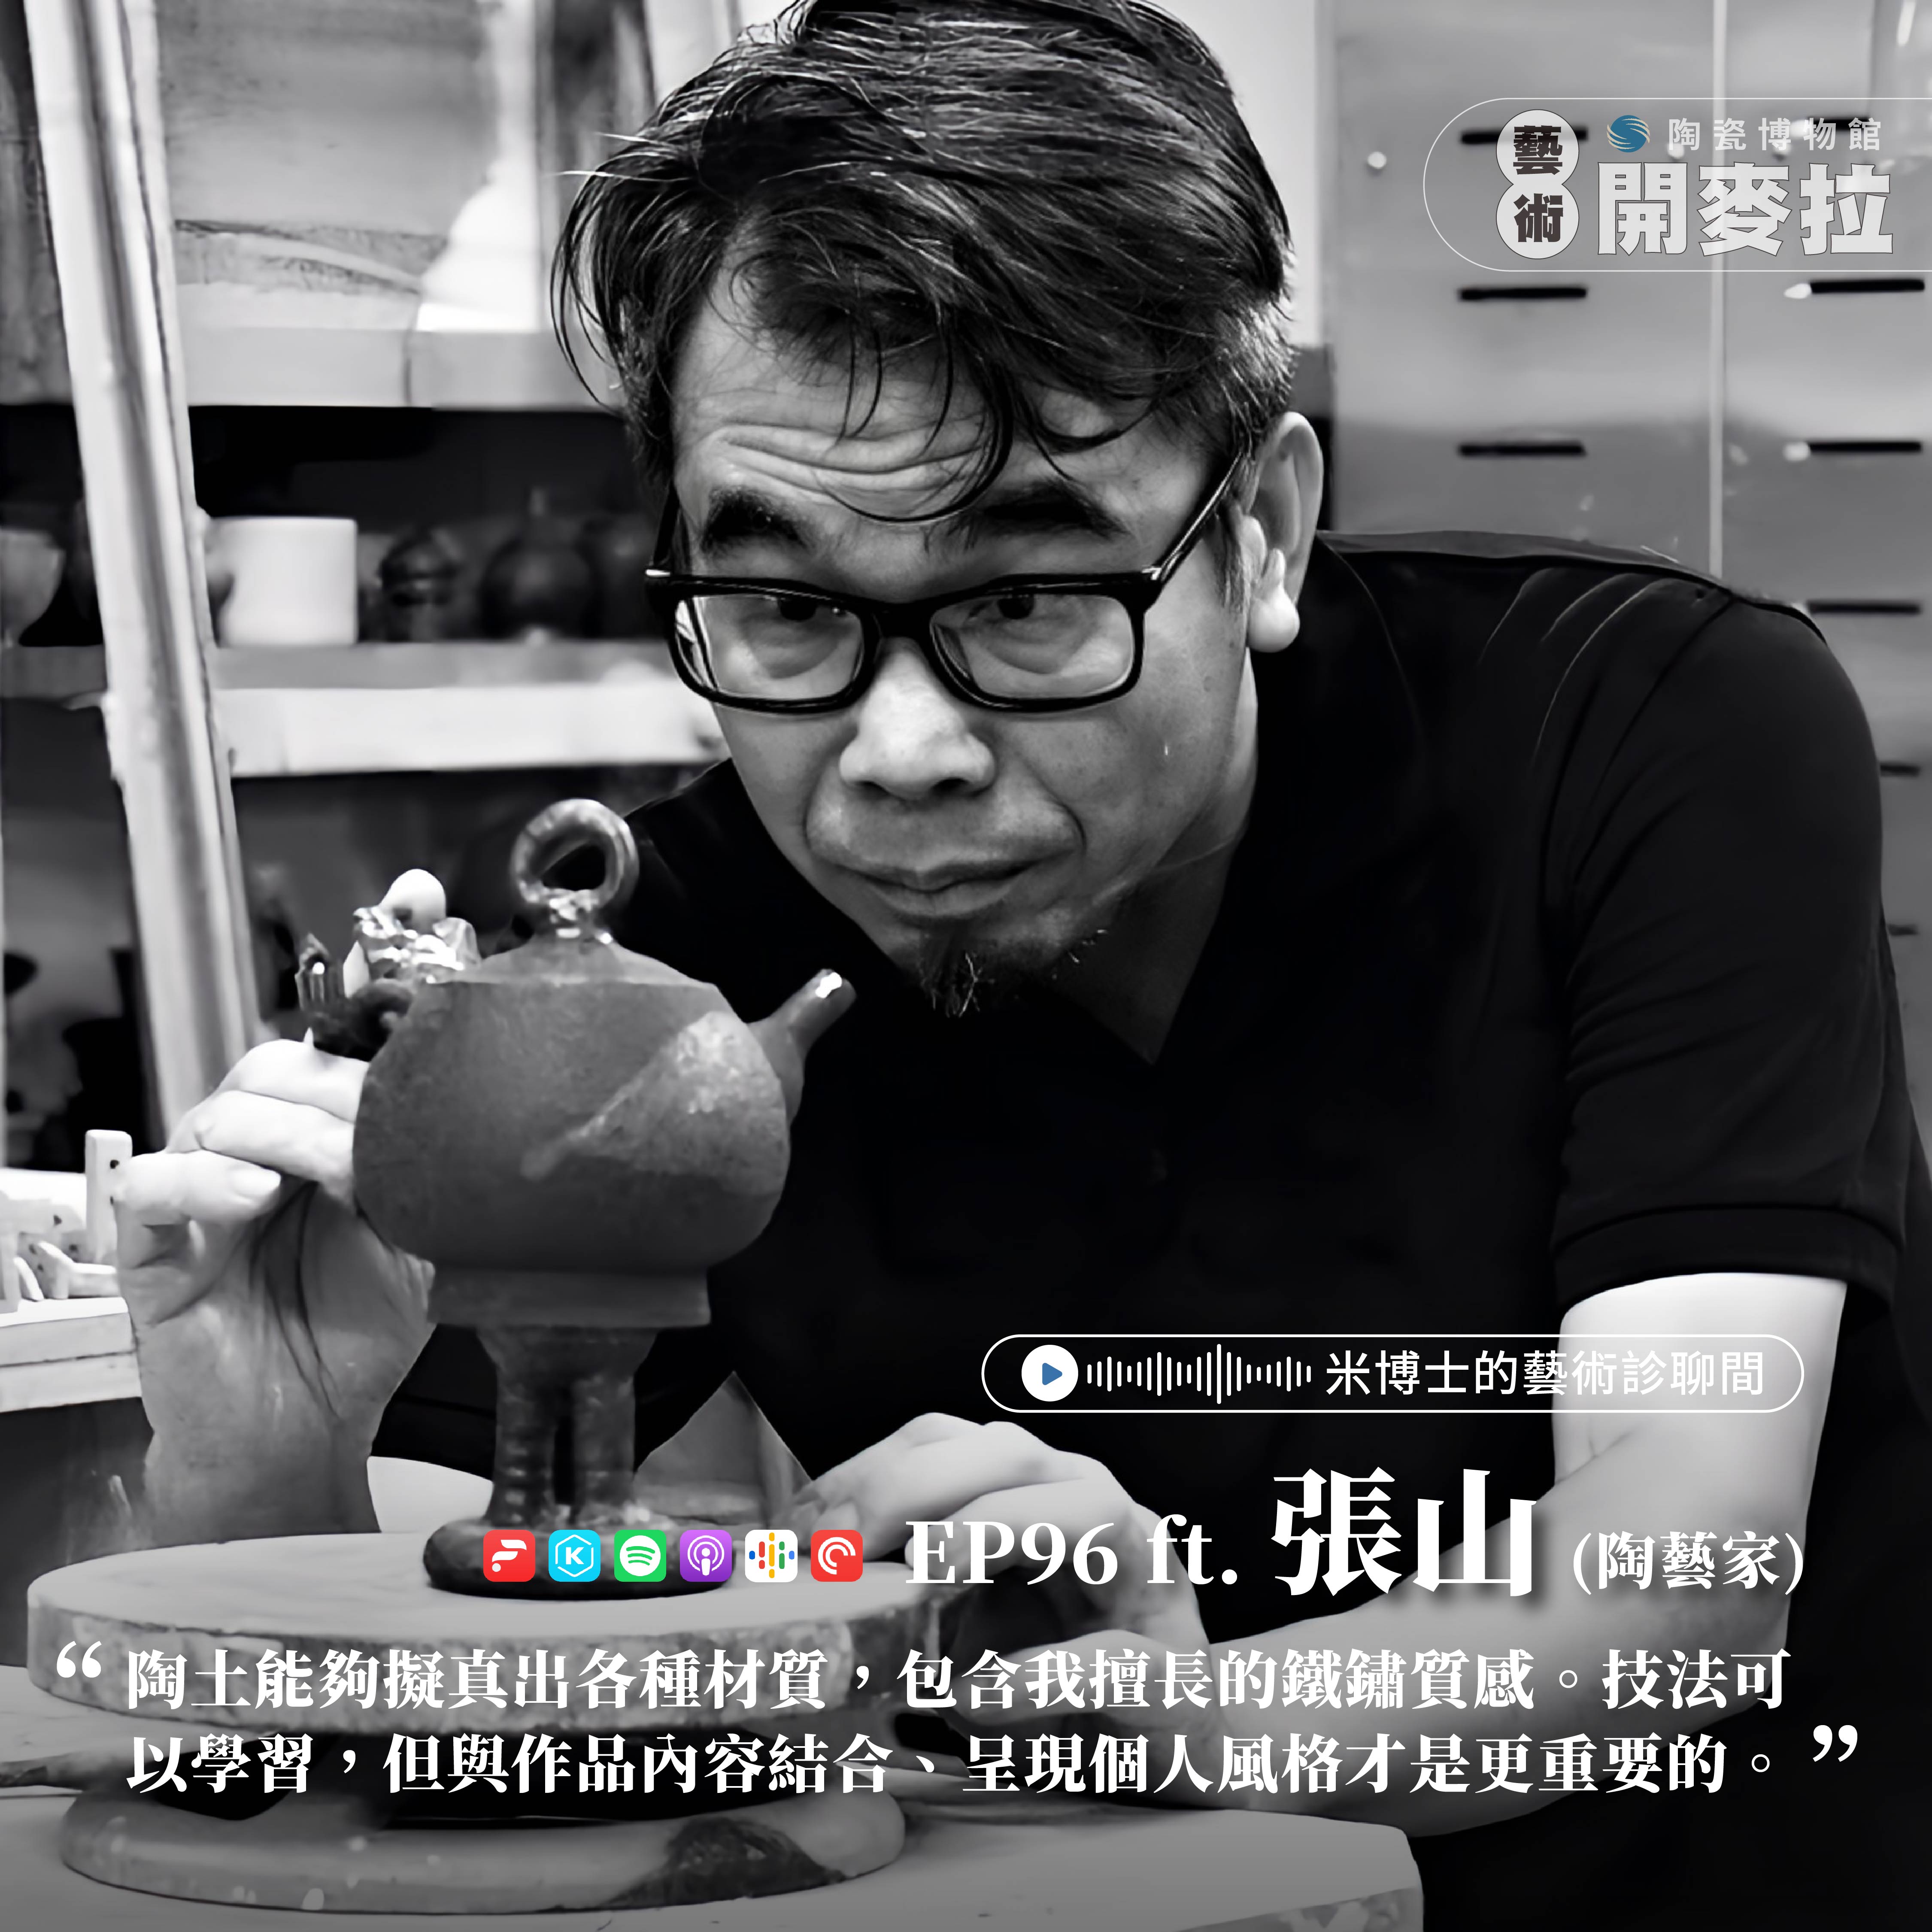 EP96【米博士的藝術診聊間】只想跟陶土玩玩 ft. 張山(陶藝家)